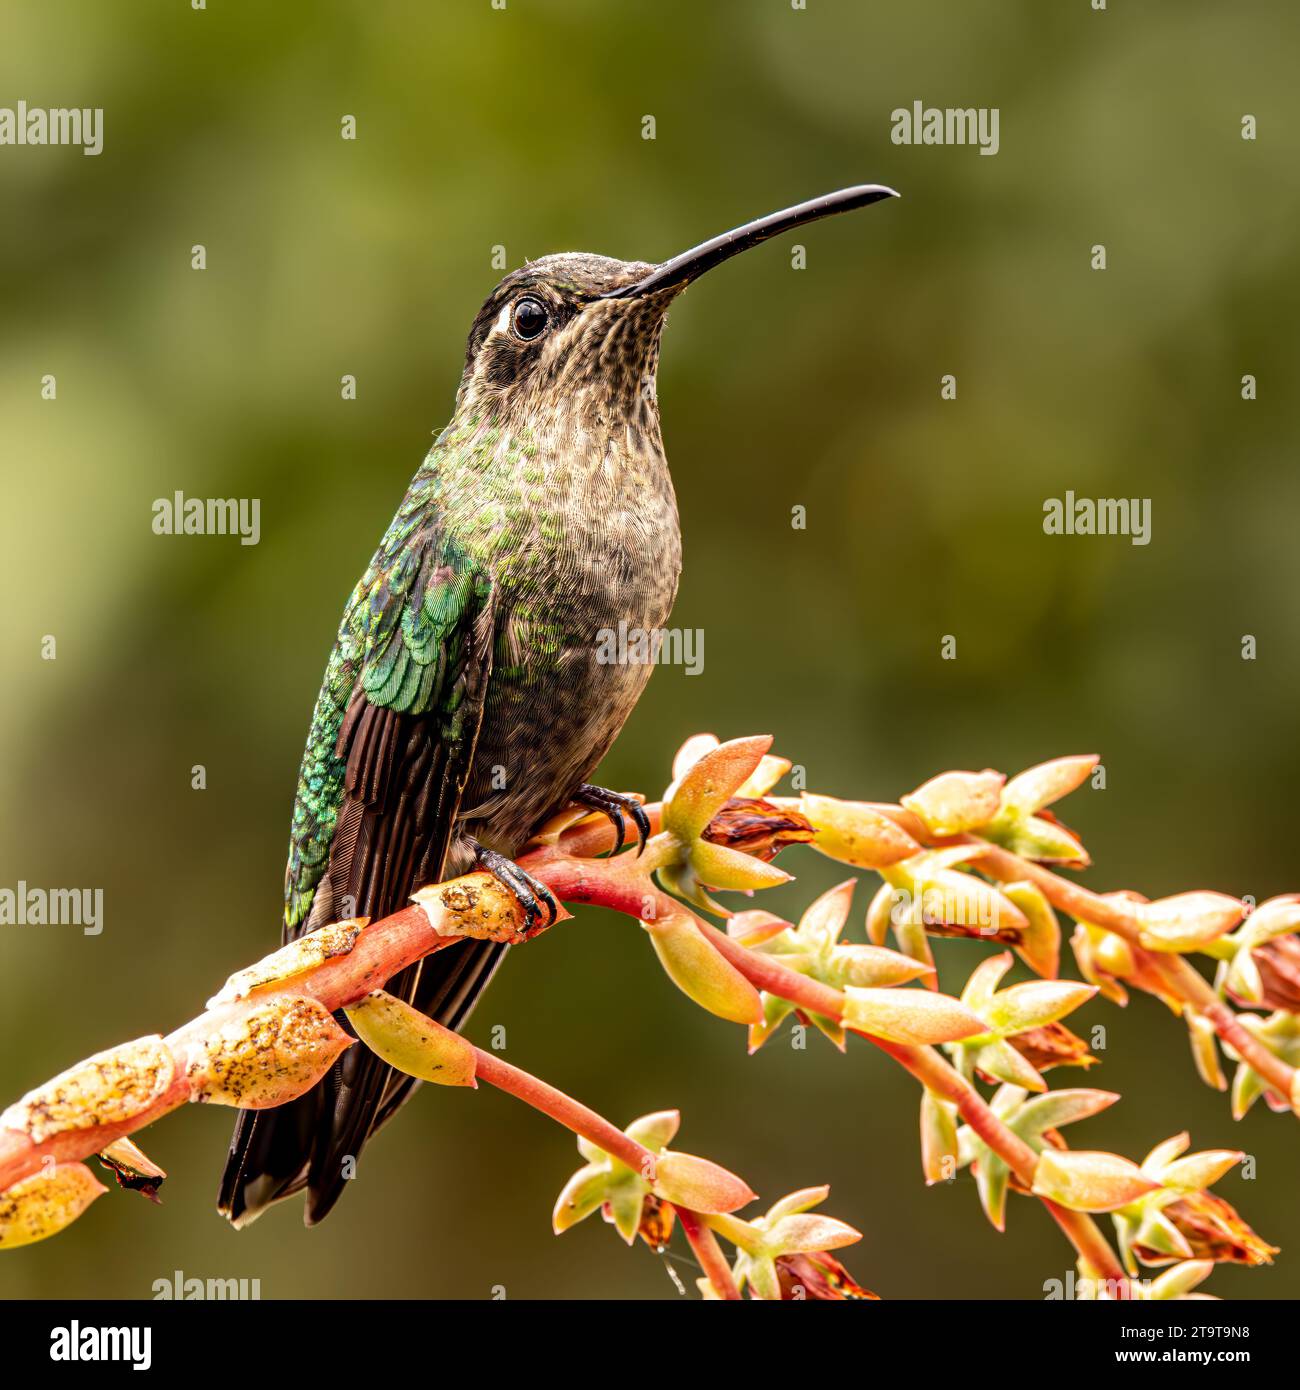 Talamanca hummingbird Stock Photo